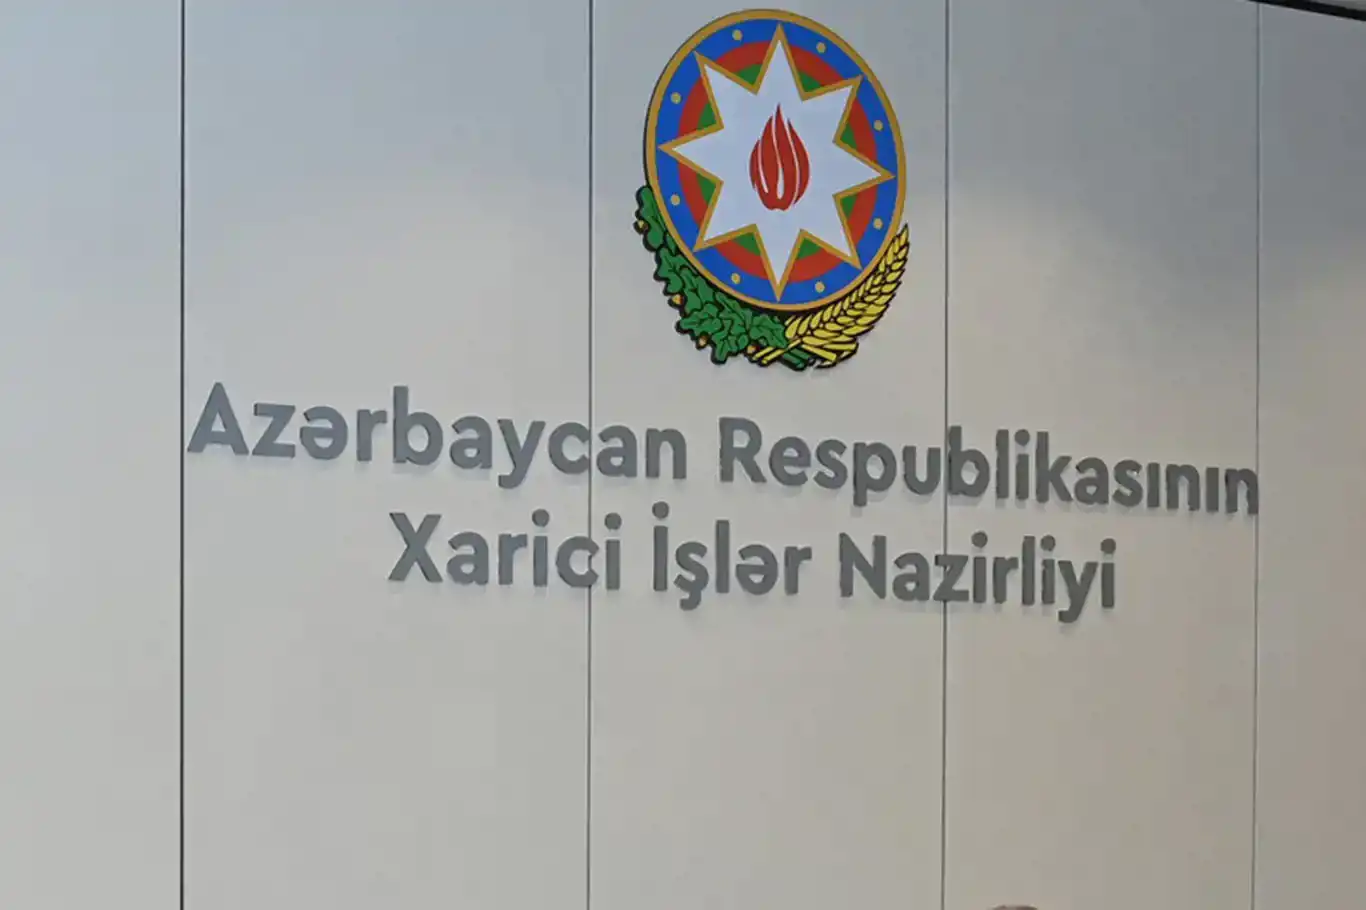 Azerbaijani forces seize dozens of military positions in Nagorno-Karabakh